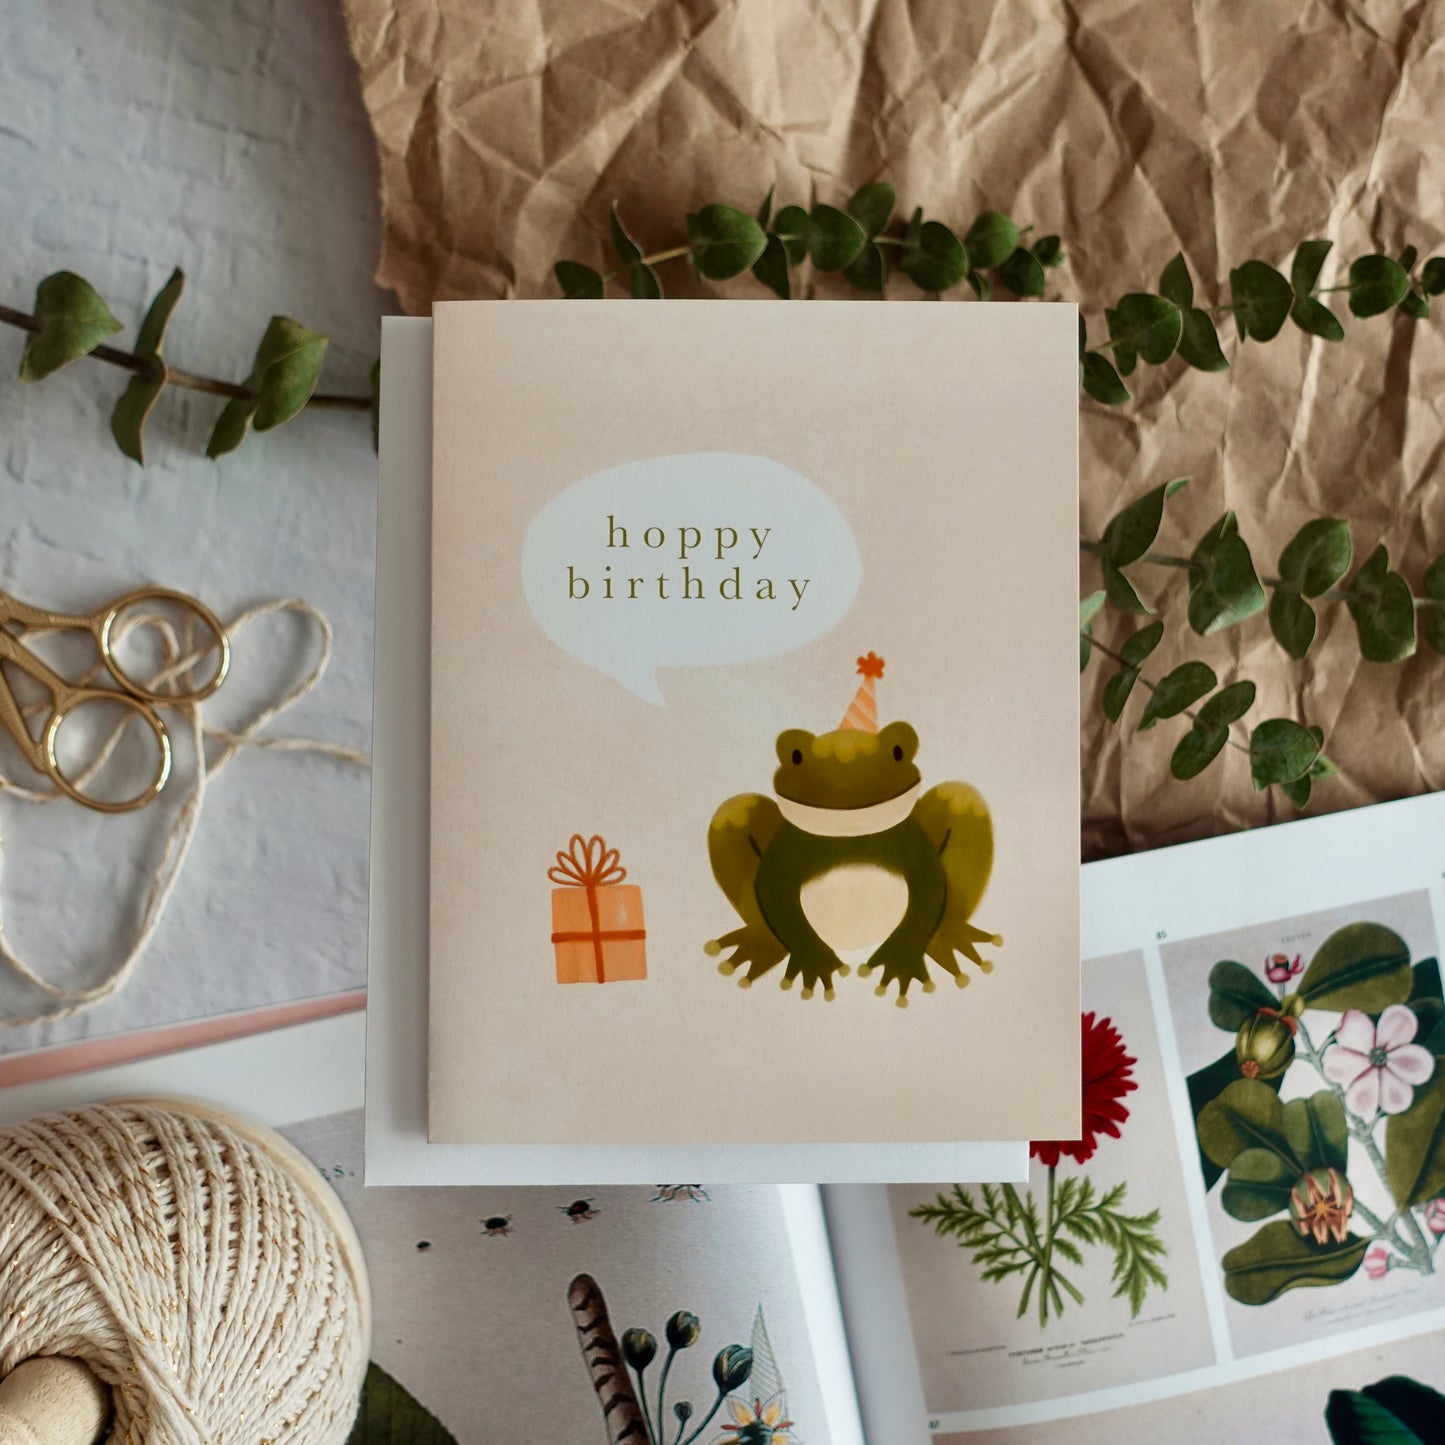 Hoppy Birthday - Frog Birthday Card